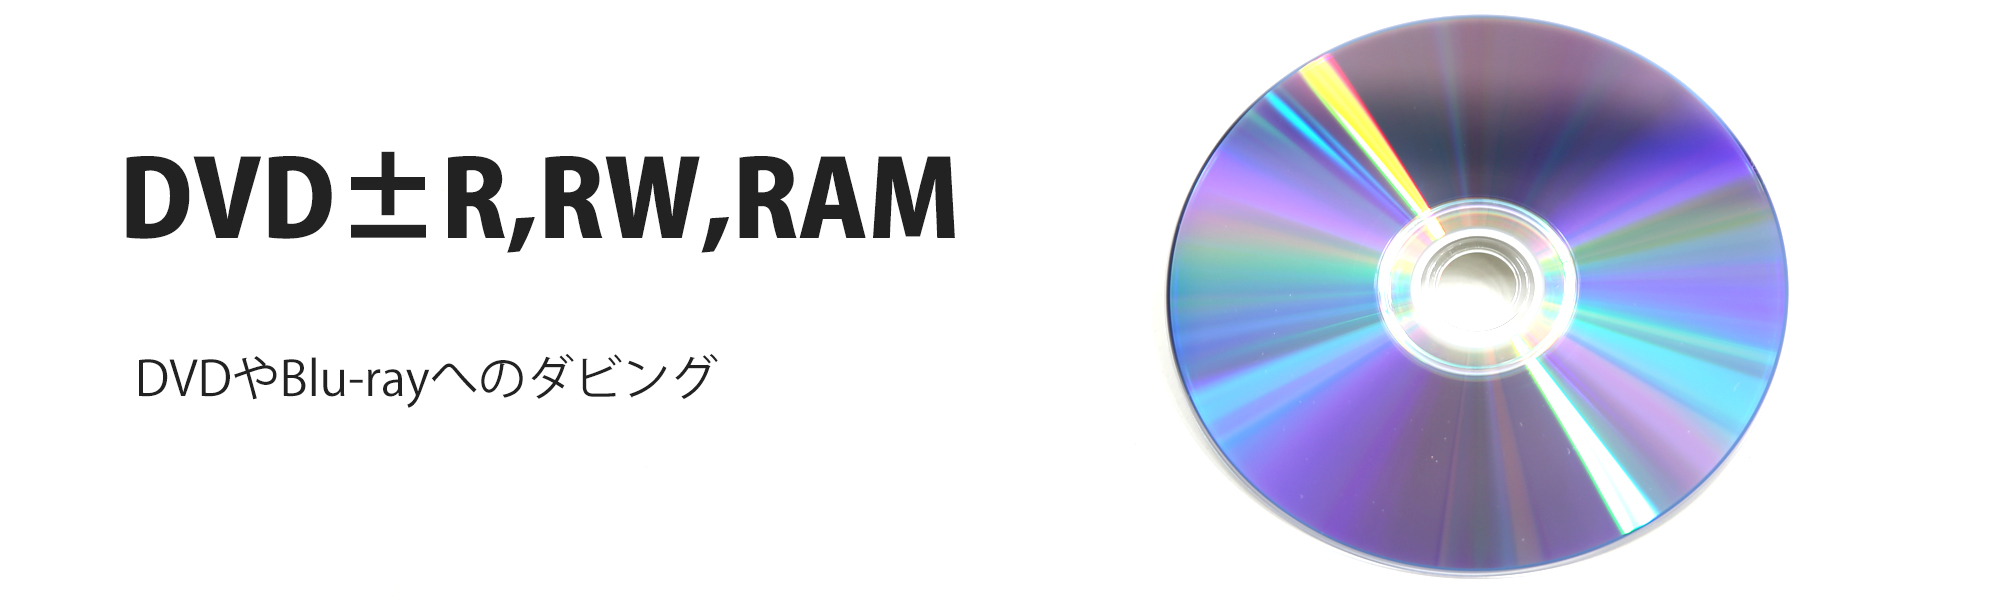 DVD±R,RW,RAMテープ